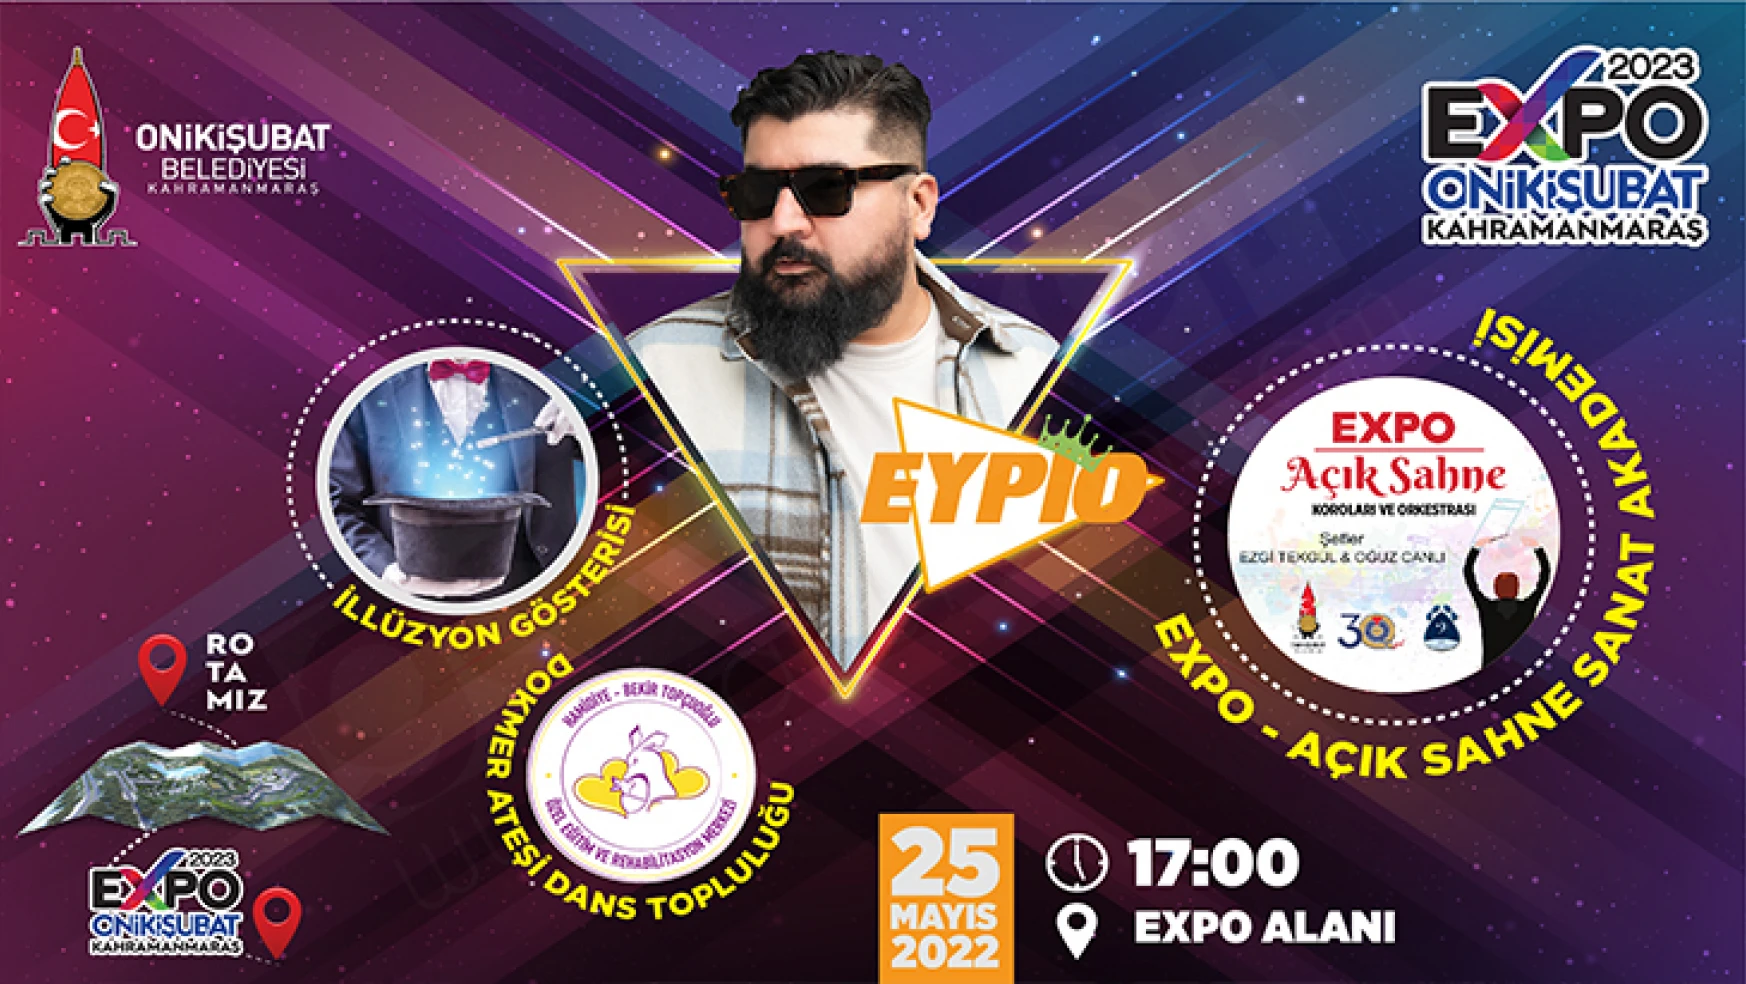 EXPO 2023 alanındaki ilk konser Eypio'dan